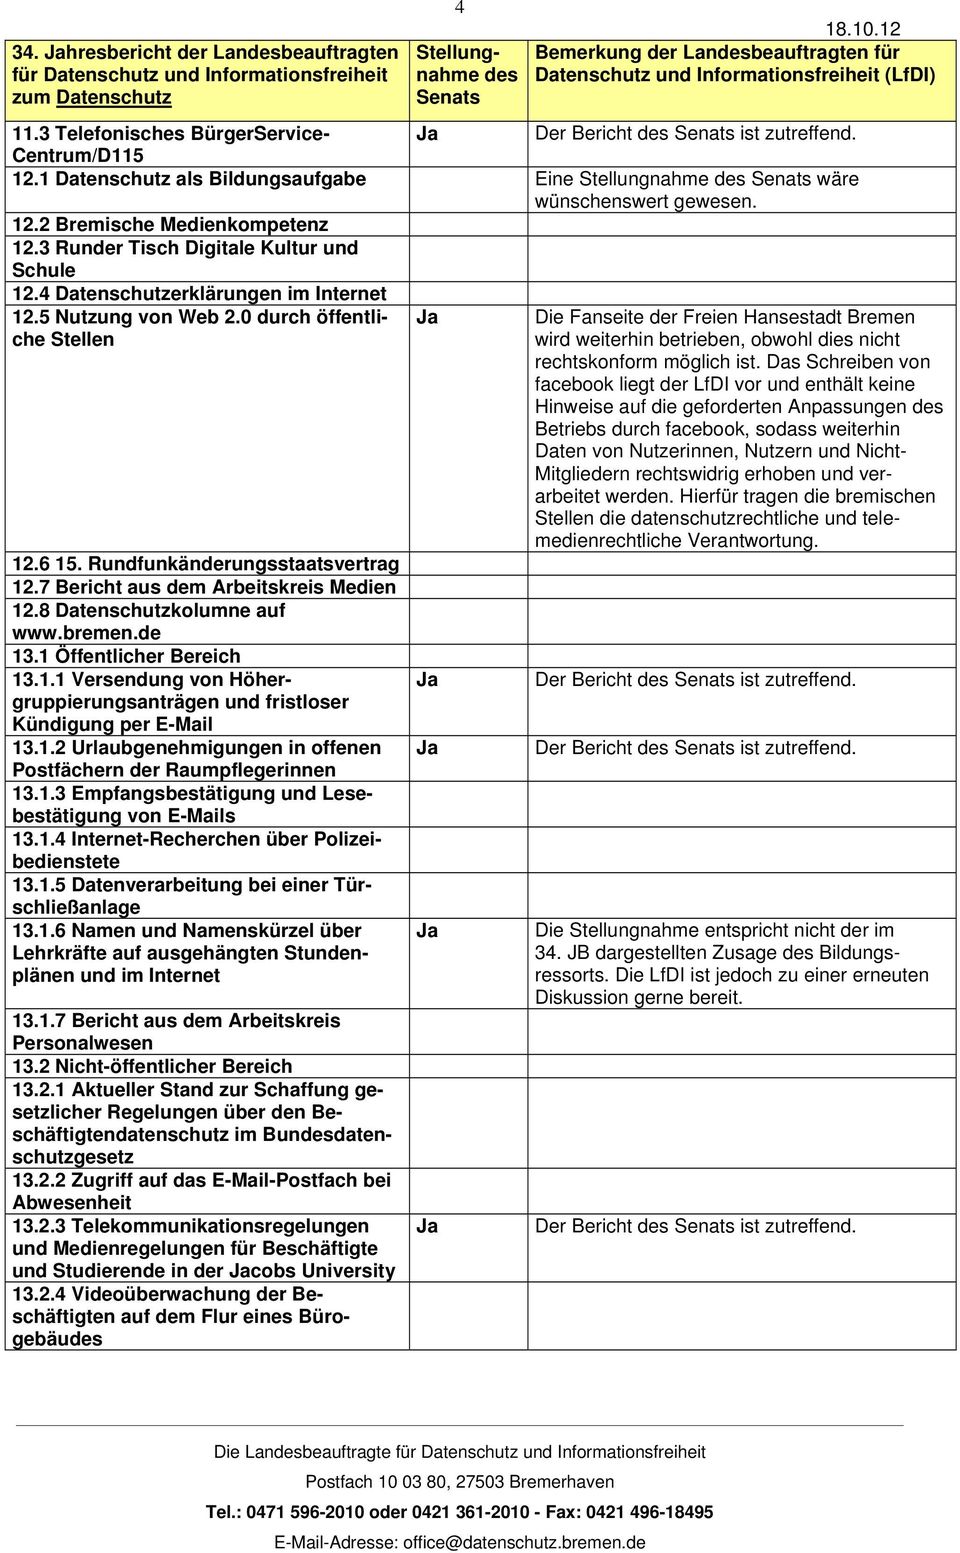 7 Bericht aus dem Arbeitskreis Medien 12.8 Datenschutzkolumne auf www.bremen.de 13.1 Öffentlicher Bereich 13.1.1 Versendung von Höhergruppierungsanträgen und fristloser Kündigung per E-Mail 13.1.2 Urlaubgenehmigungen in offenen Postfächern der Raumpflegerinnen 13.